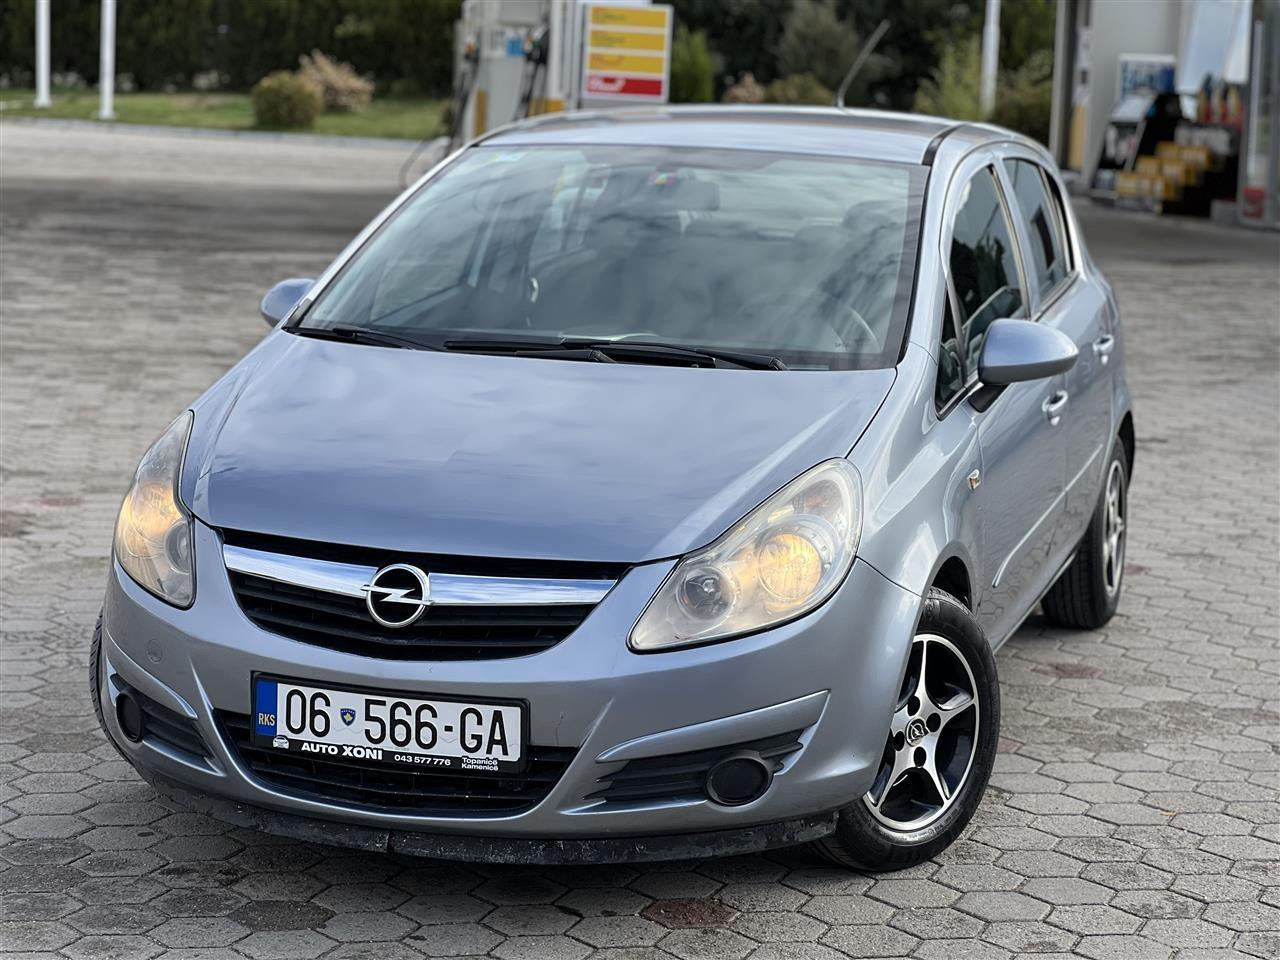 Opel Corsa D 1.0 Benzin V.p2006 Rks 1 Vjet 